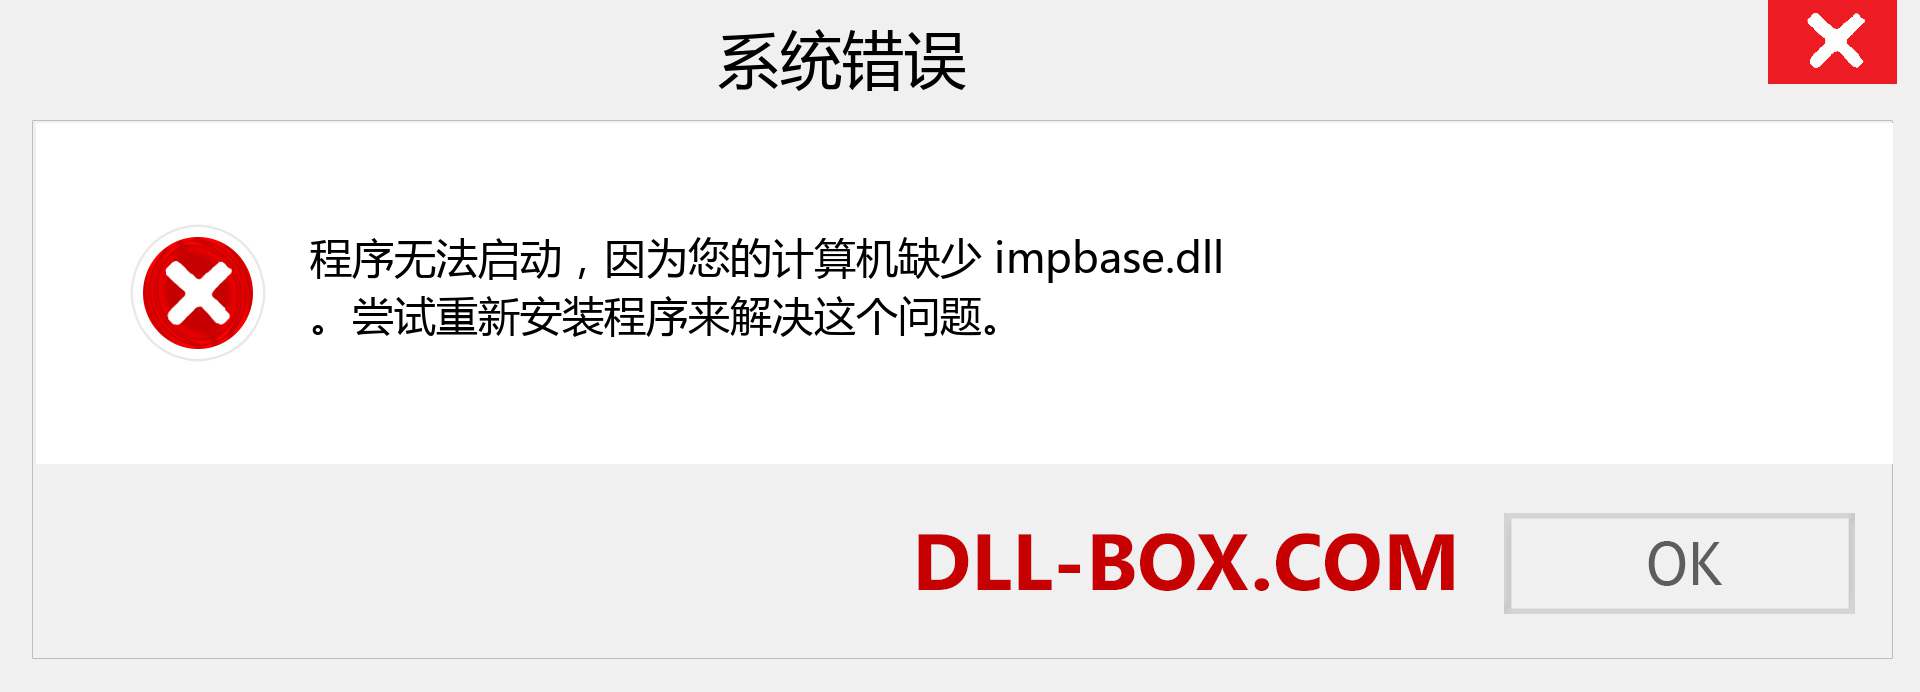 impbase.dll 文件丢失？。 适用于 Windows 7、8、10 的下载 - 修复 Windows、照片、图像上的 impbase dll 丢失错误